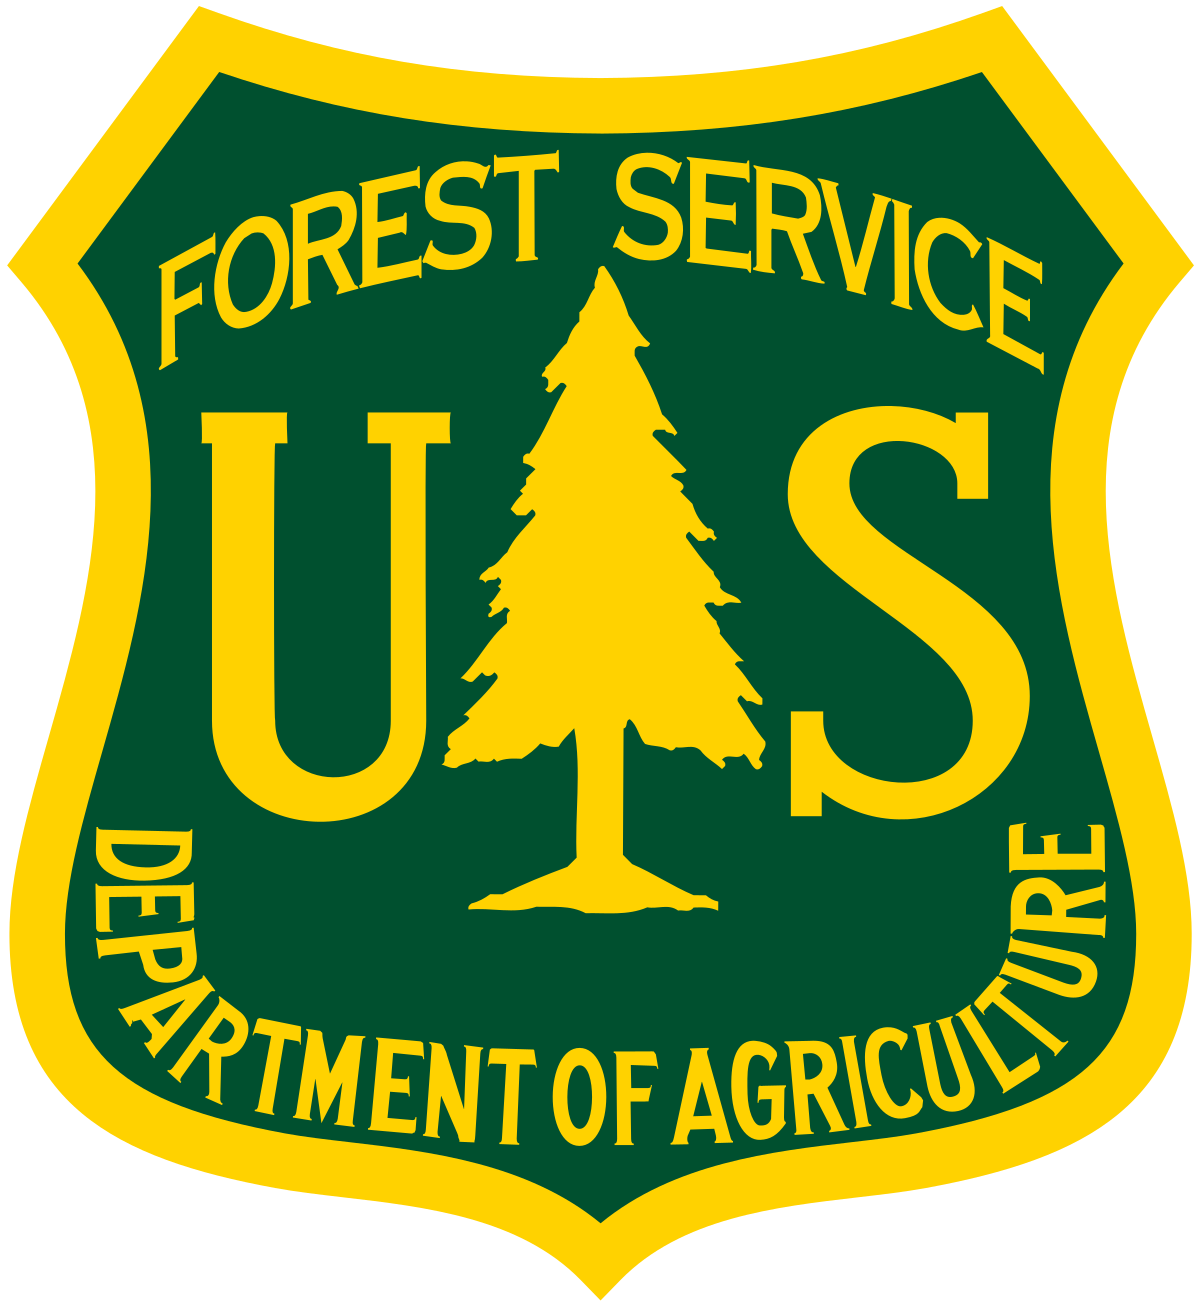 Servicio Forestal de los Estados Unidos